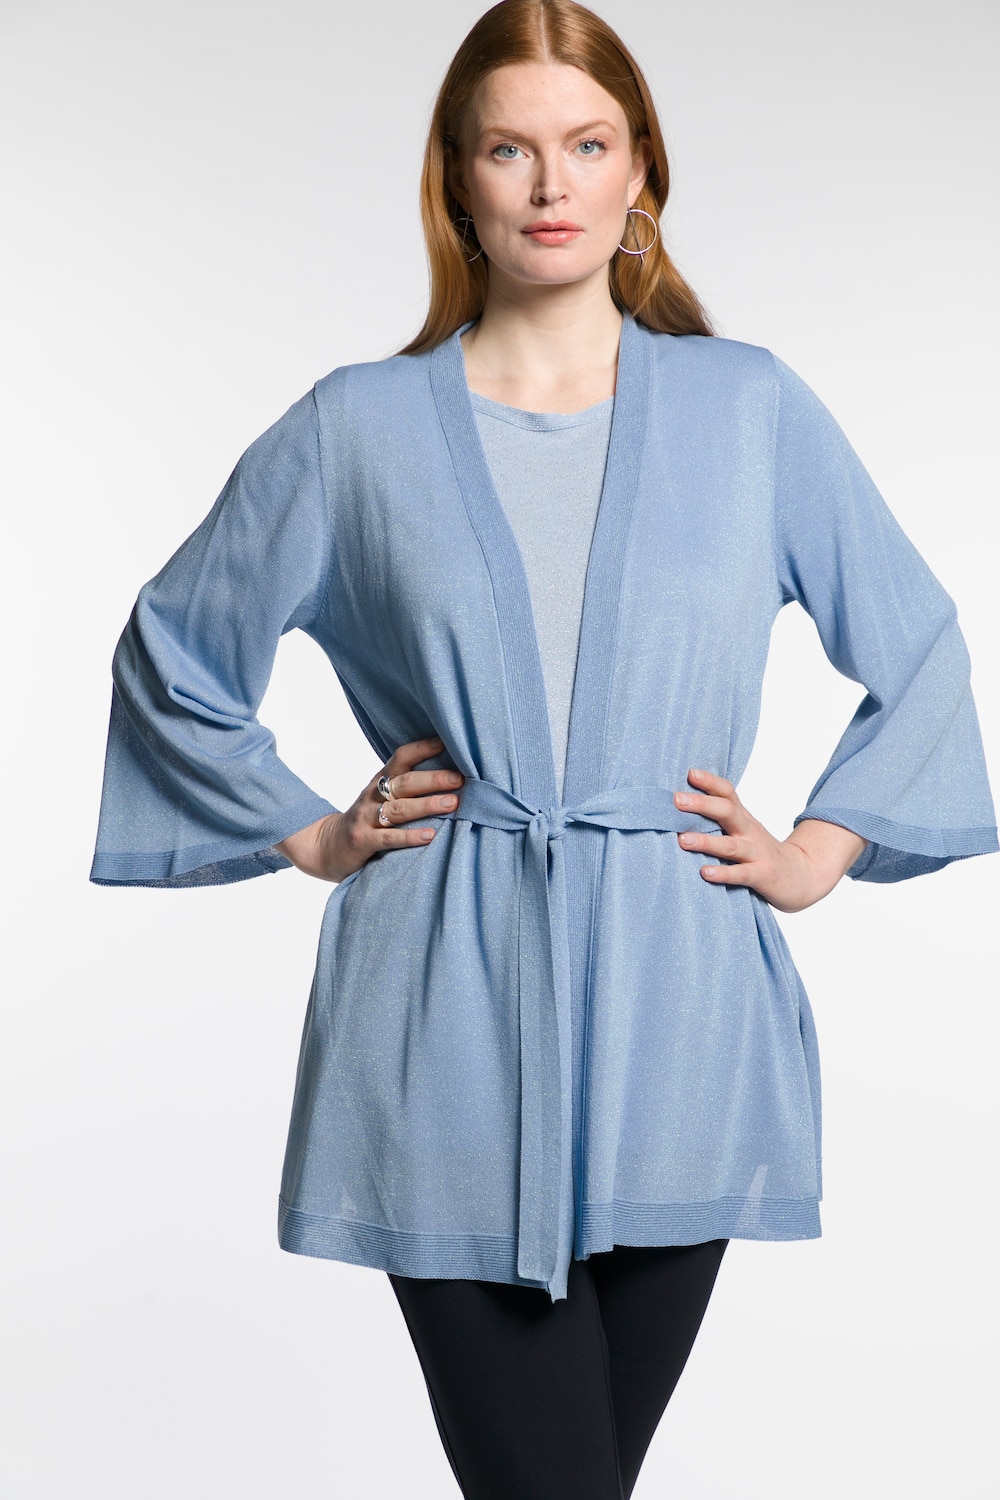 Plus Size Shimmer Effect Open Front Cardigan Sweater, Woman, blue, size: 16/18, viscose/metallic fibers, Ulla Popken